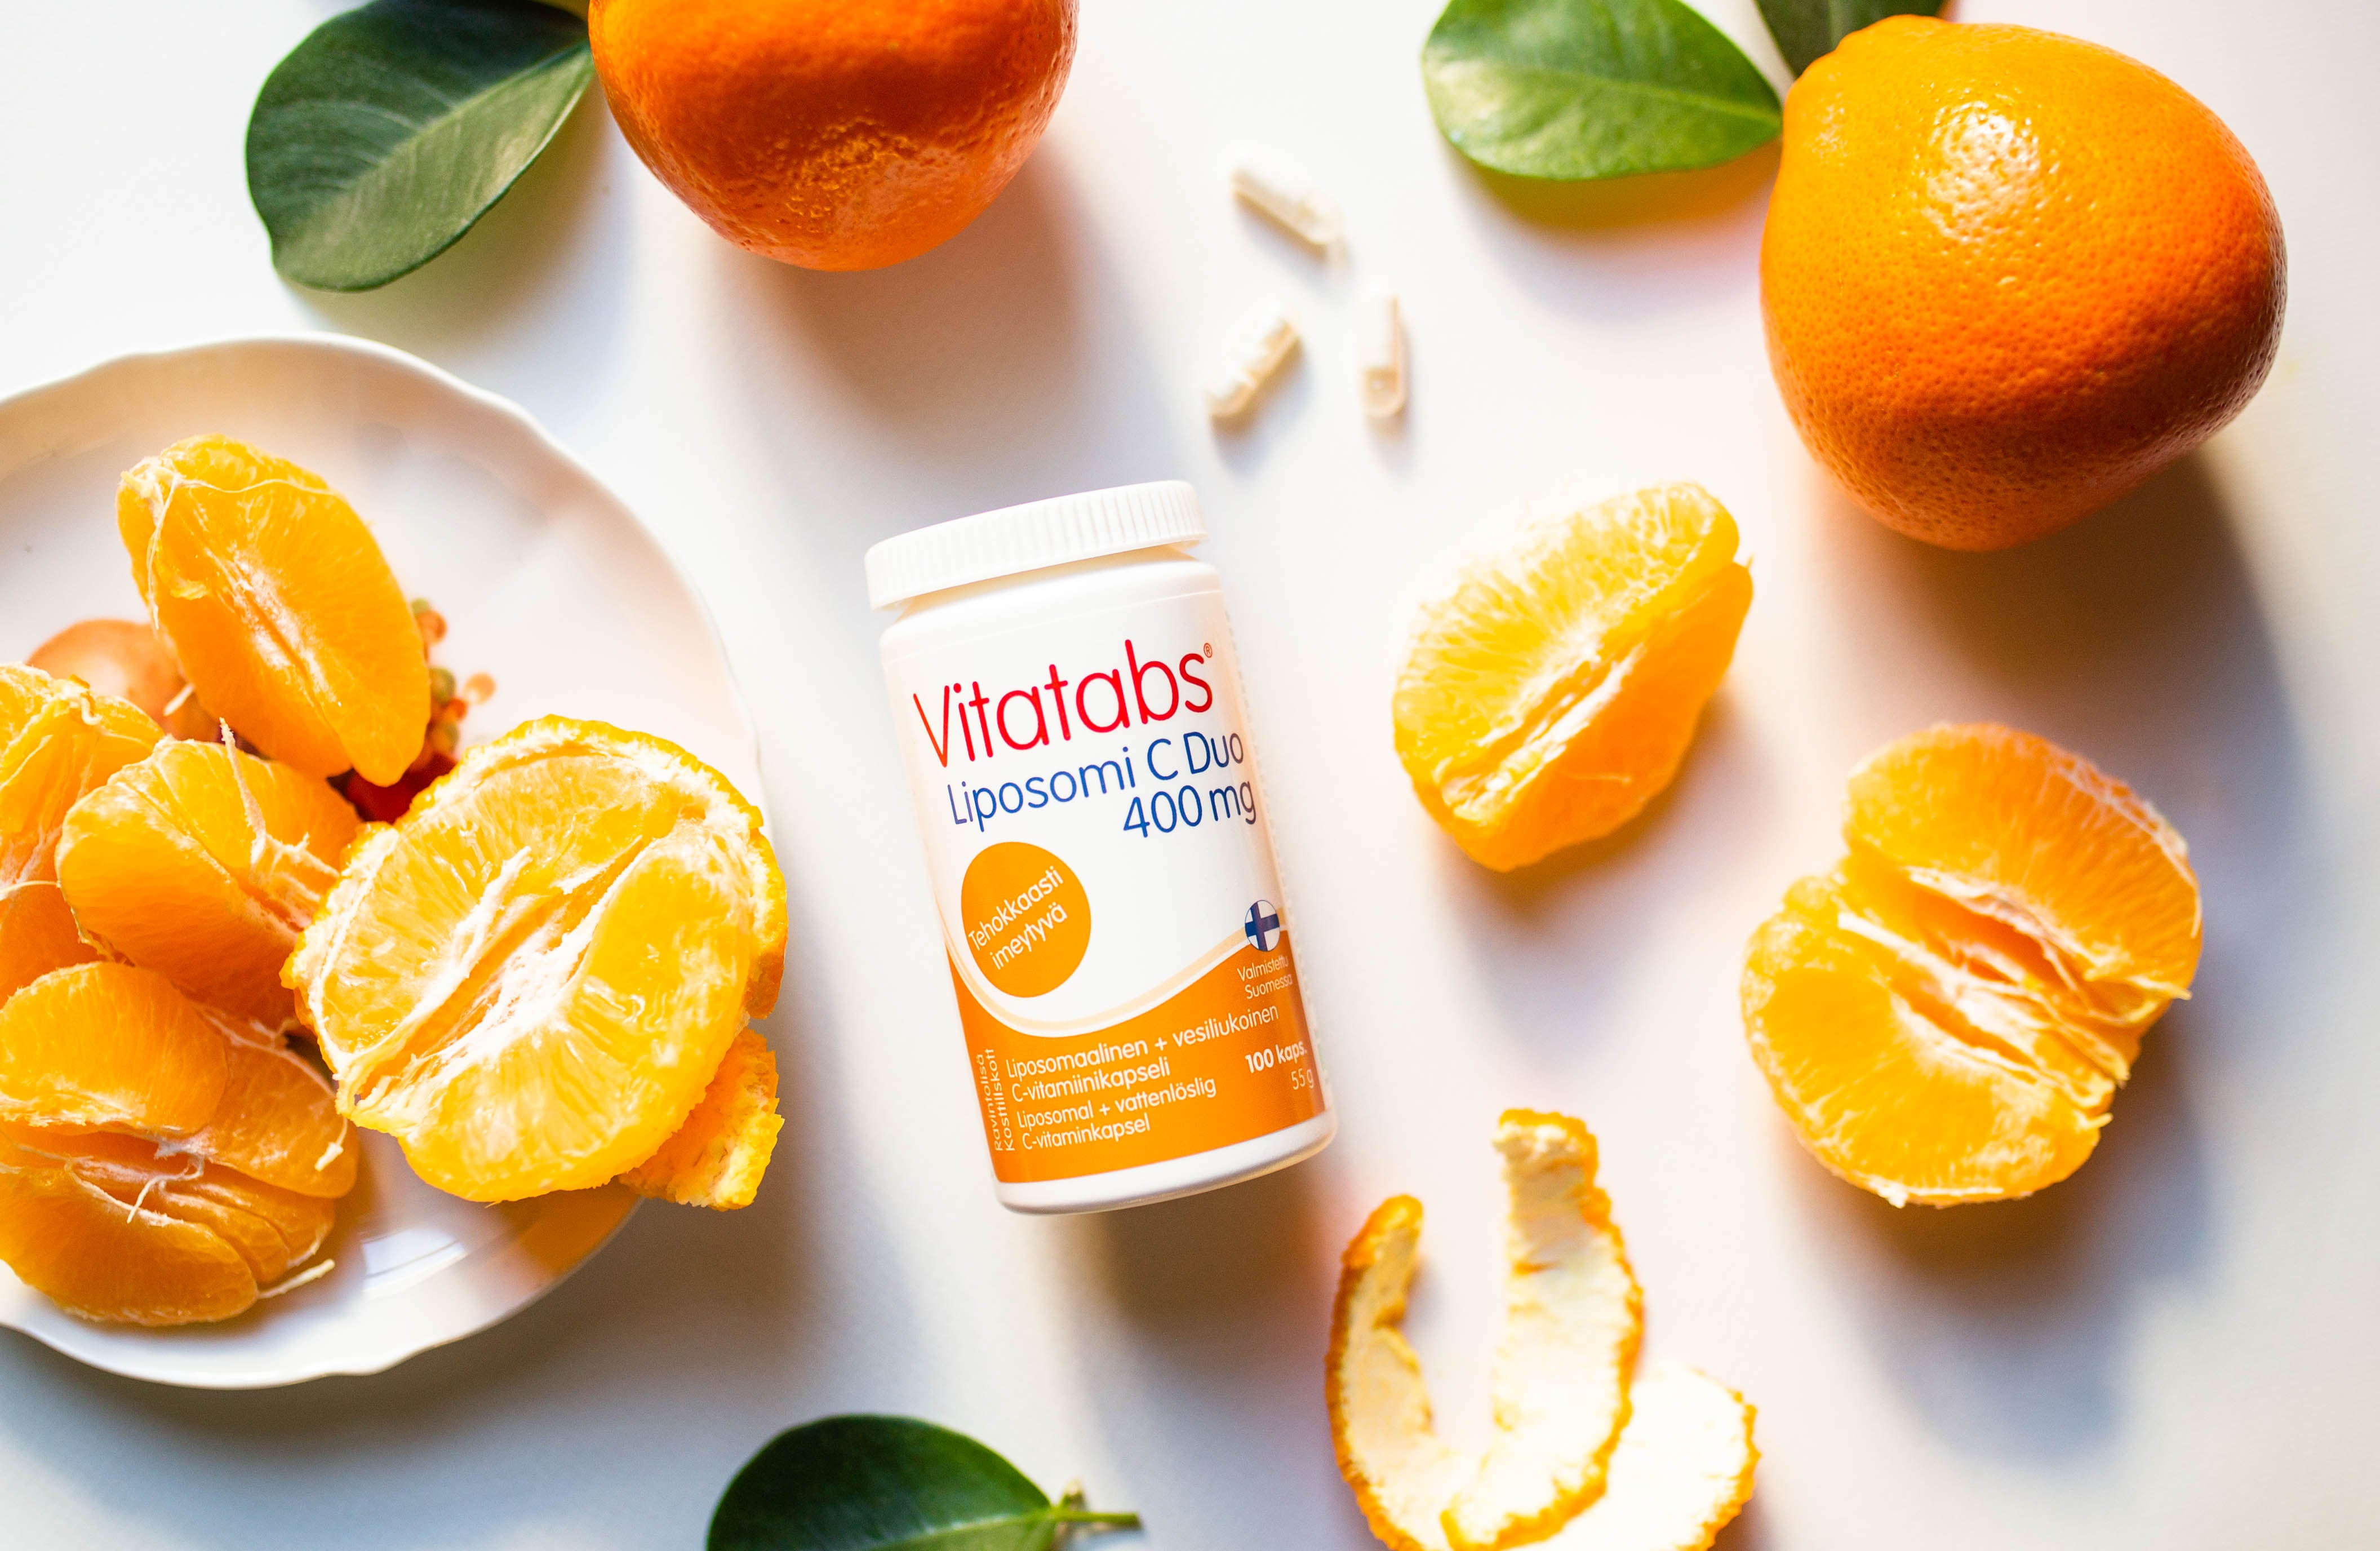 Vitatabs® Liposomi C Duo -kapselit sisältävät tehokkaan yhdistelmän rasvaliukoista liposomaalista C-vitamiinia sekä vesiliukoista C-vitamiinia.